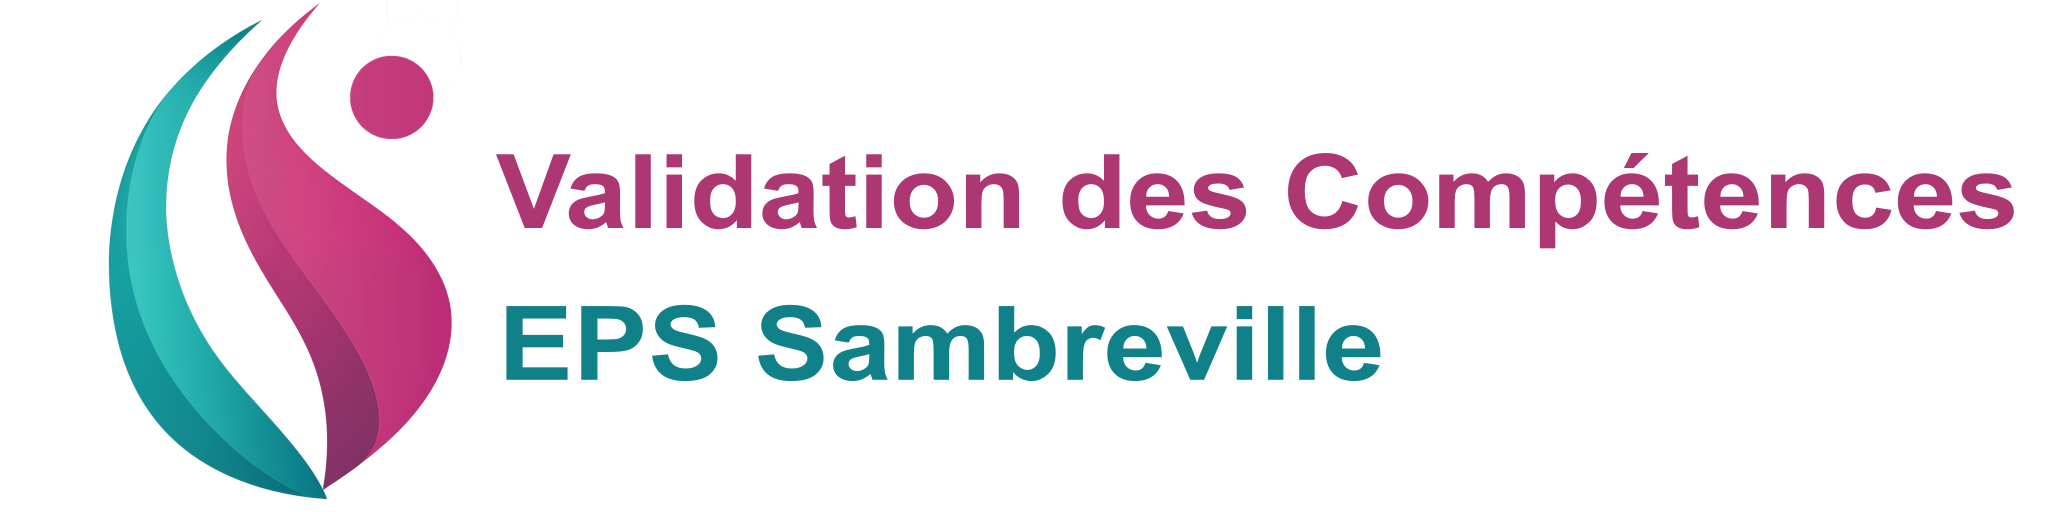 Validation des Compétences de l'EPS Sambreville